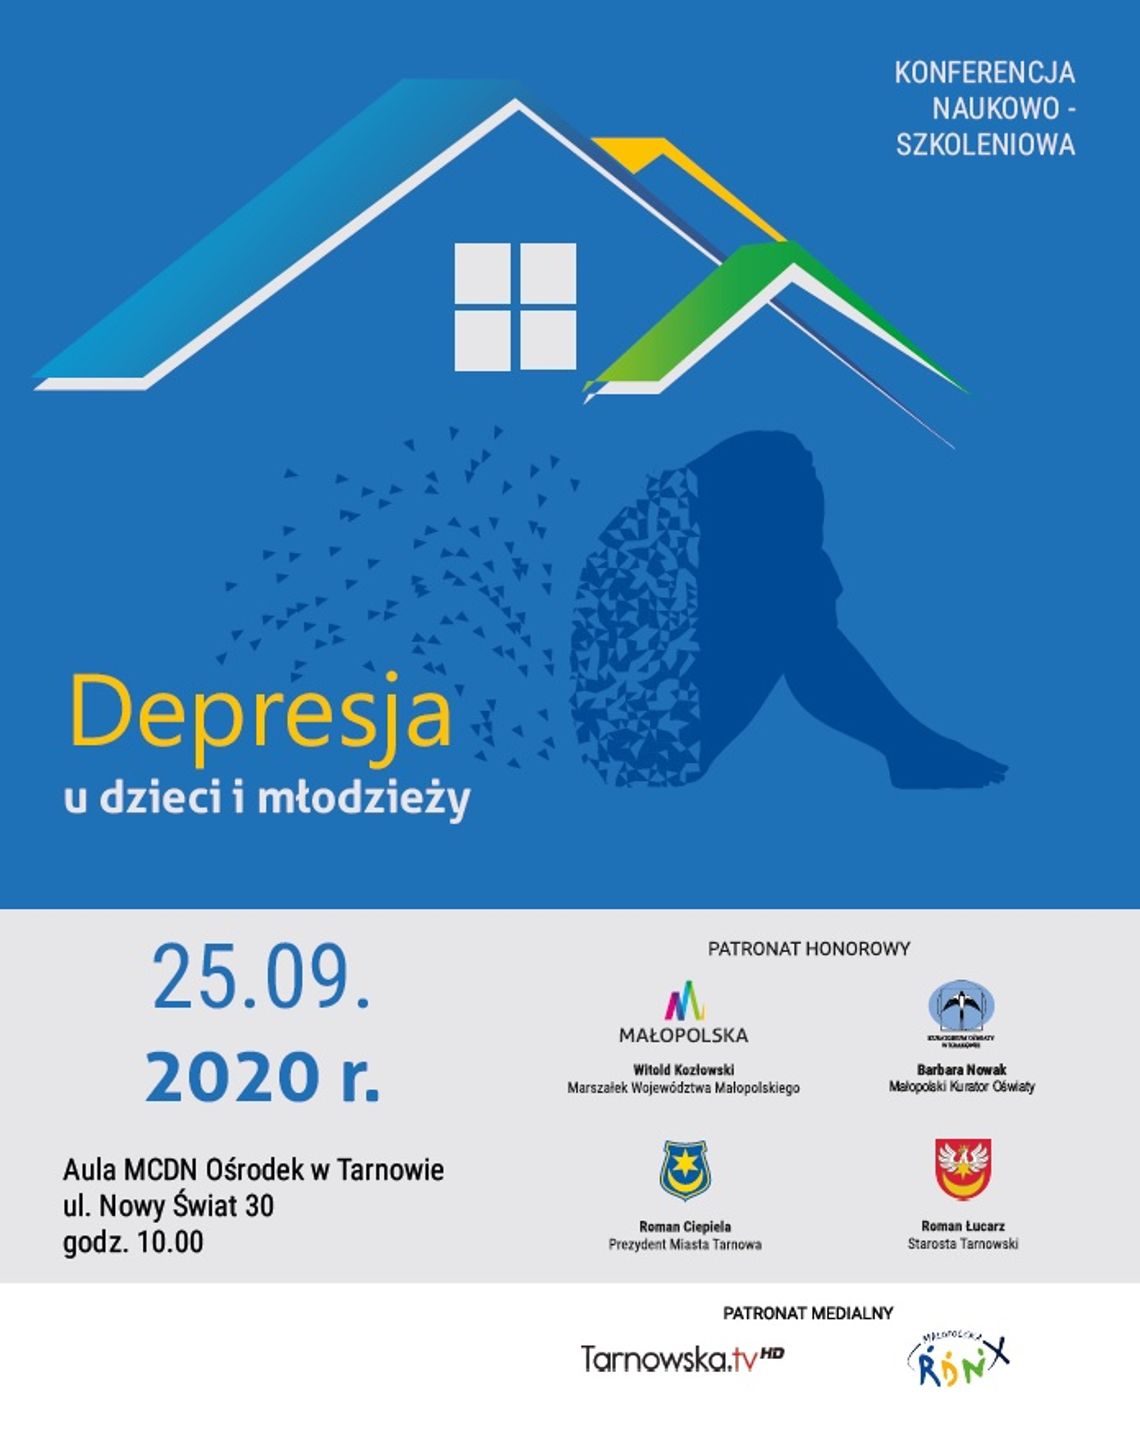 Depresja u dzieci i młodzieży! Zbliża się konferencja naukowo-szkoleniowa